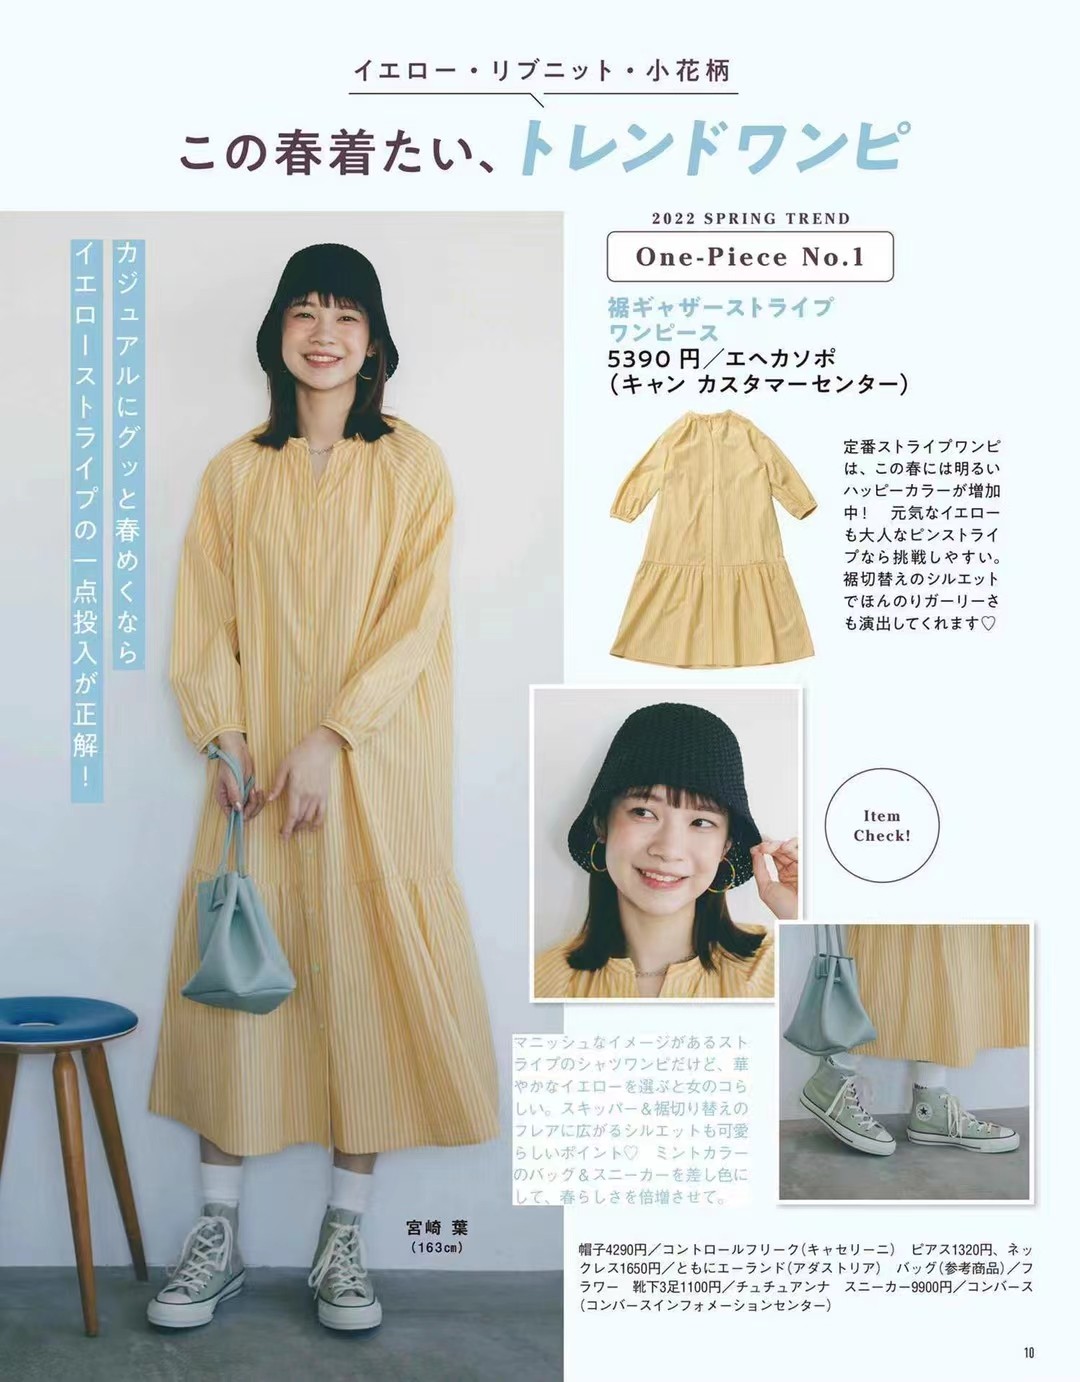 【瑜伽健身上新】 【日本】 051 《mer》 2022年05月 日本时尚潮流女性服饰穿搭少女杂志